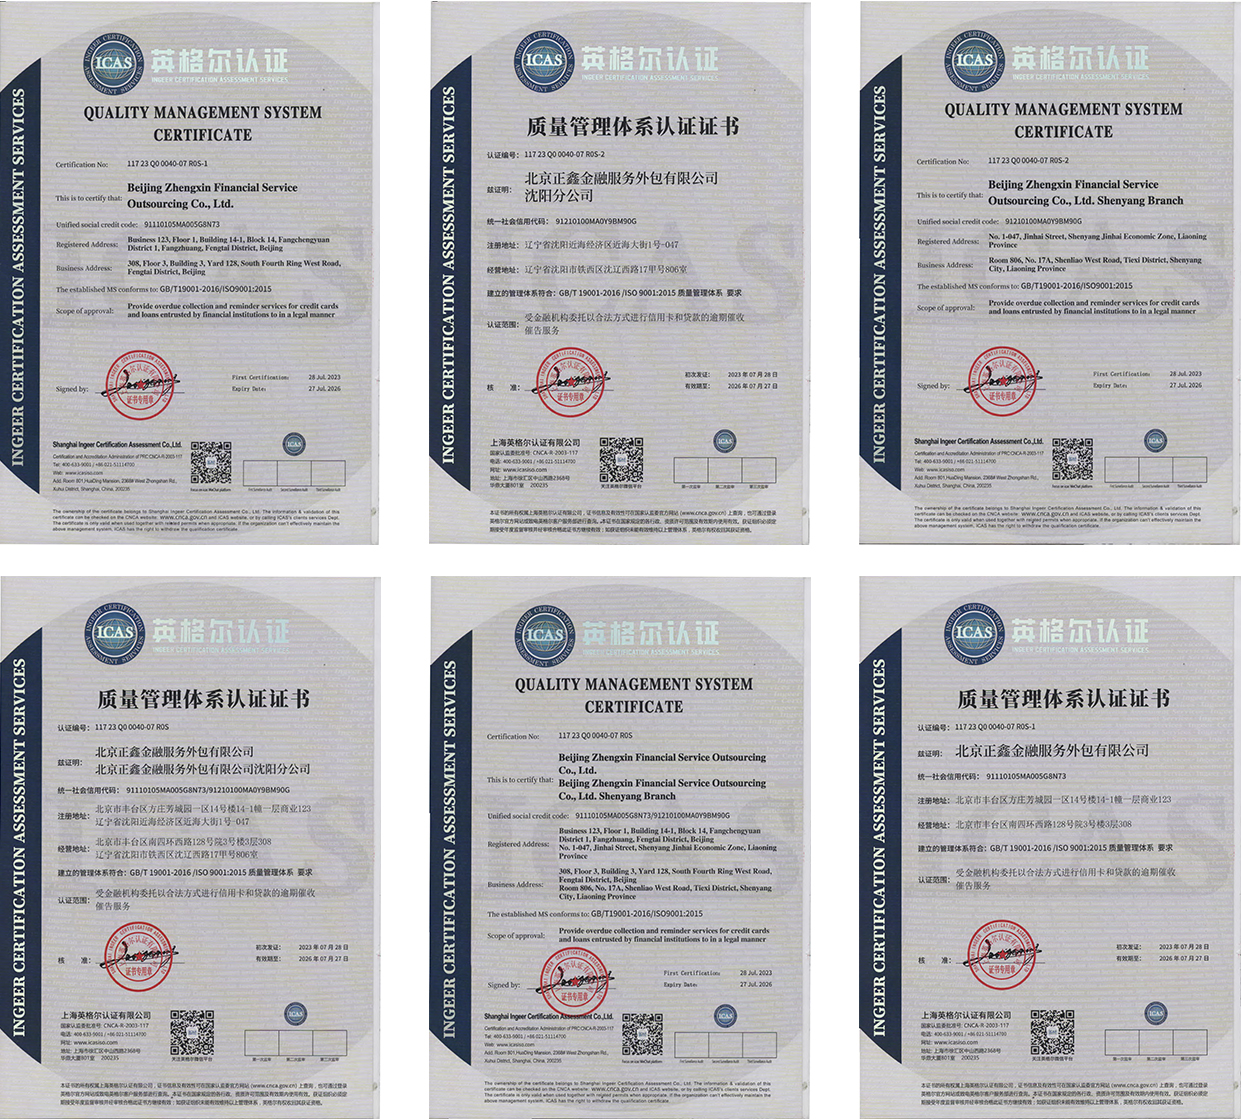 热烈祝贺辽宁正鑫资产管理有限公司、沈阳分公司、锦州分公司、北京正鑫外包服务有限公司、沈阳分公司通过ISO9001认证、北京正鑫外包服务有限公司通过ISO27001认证